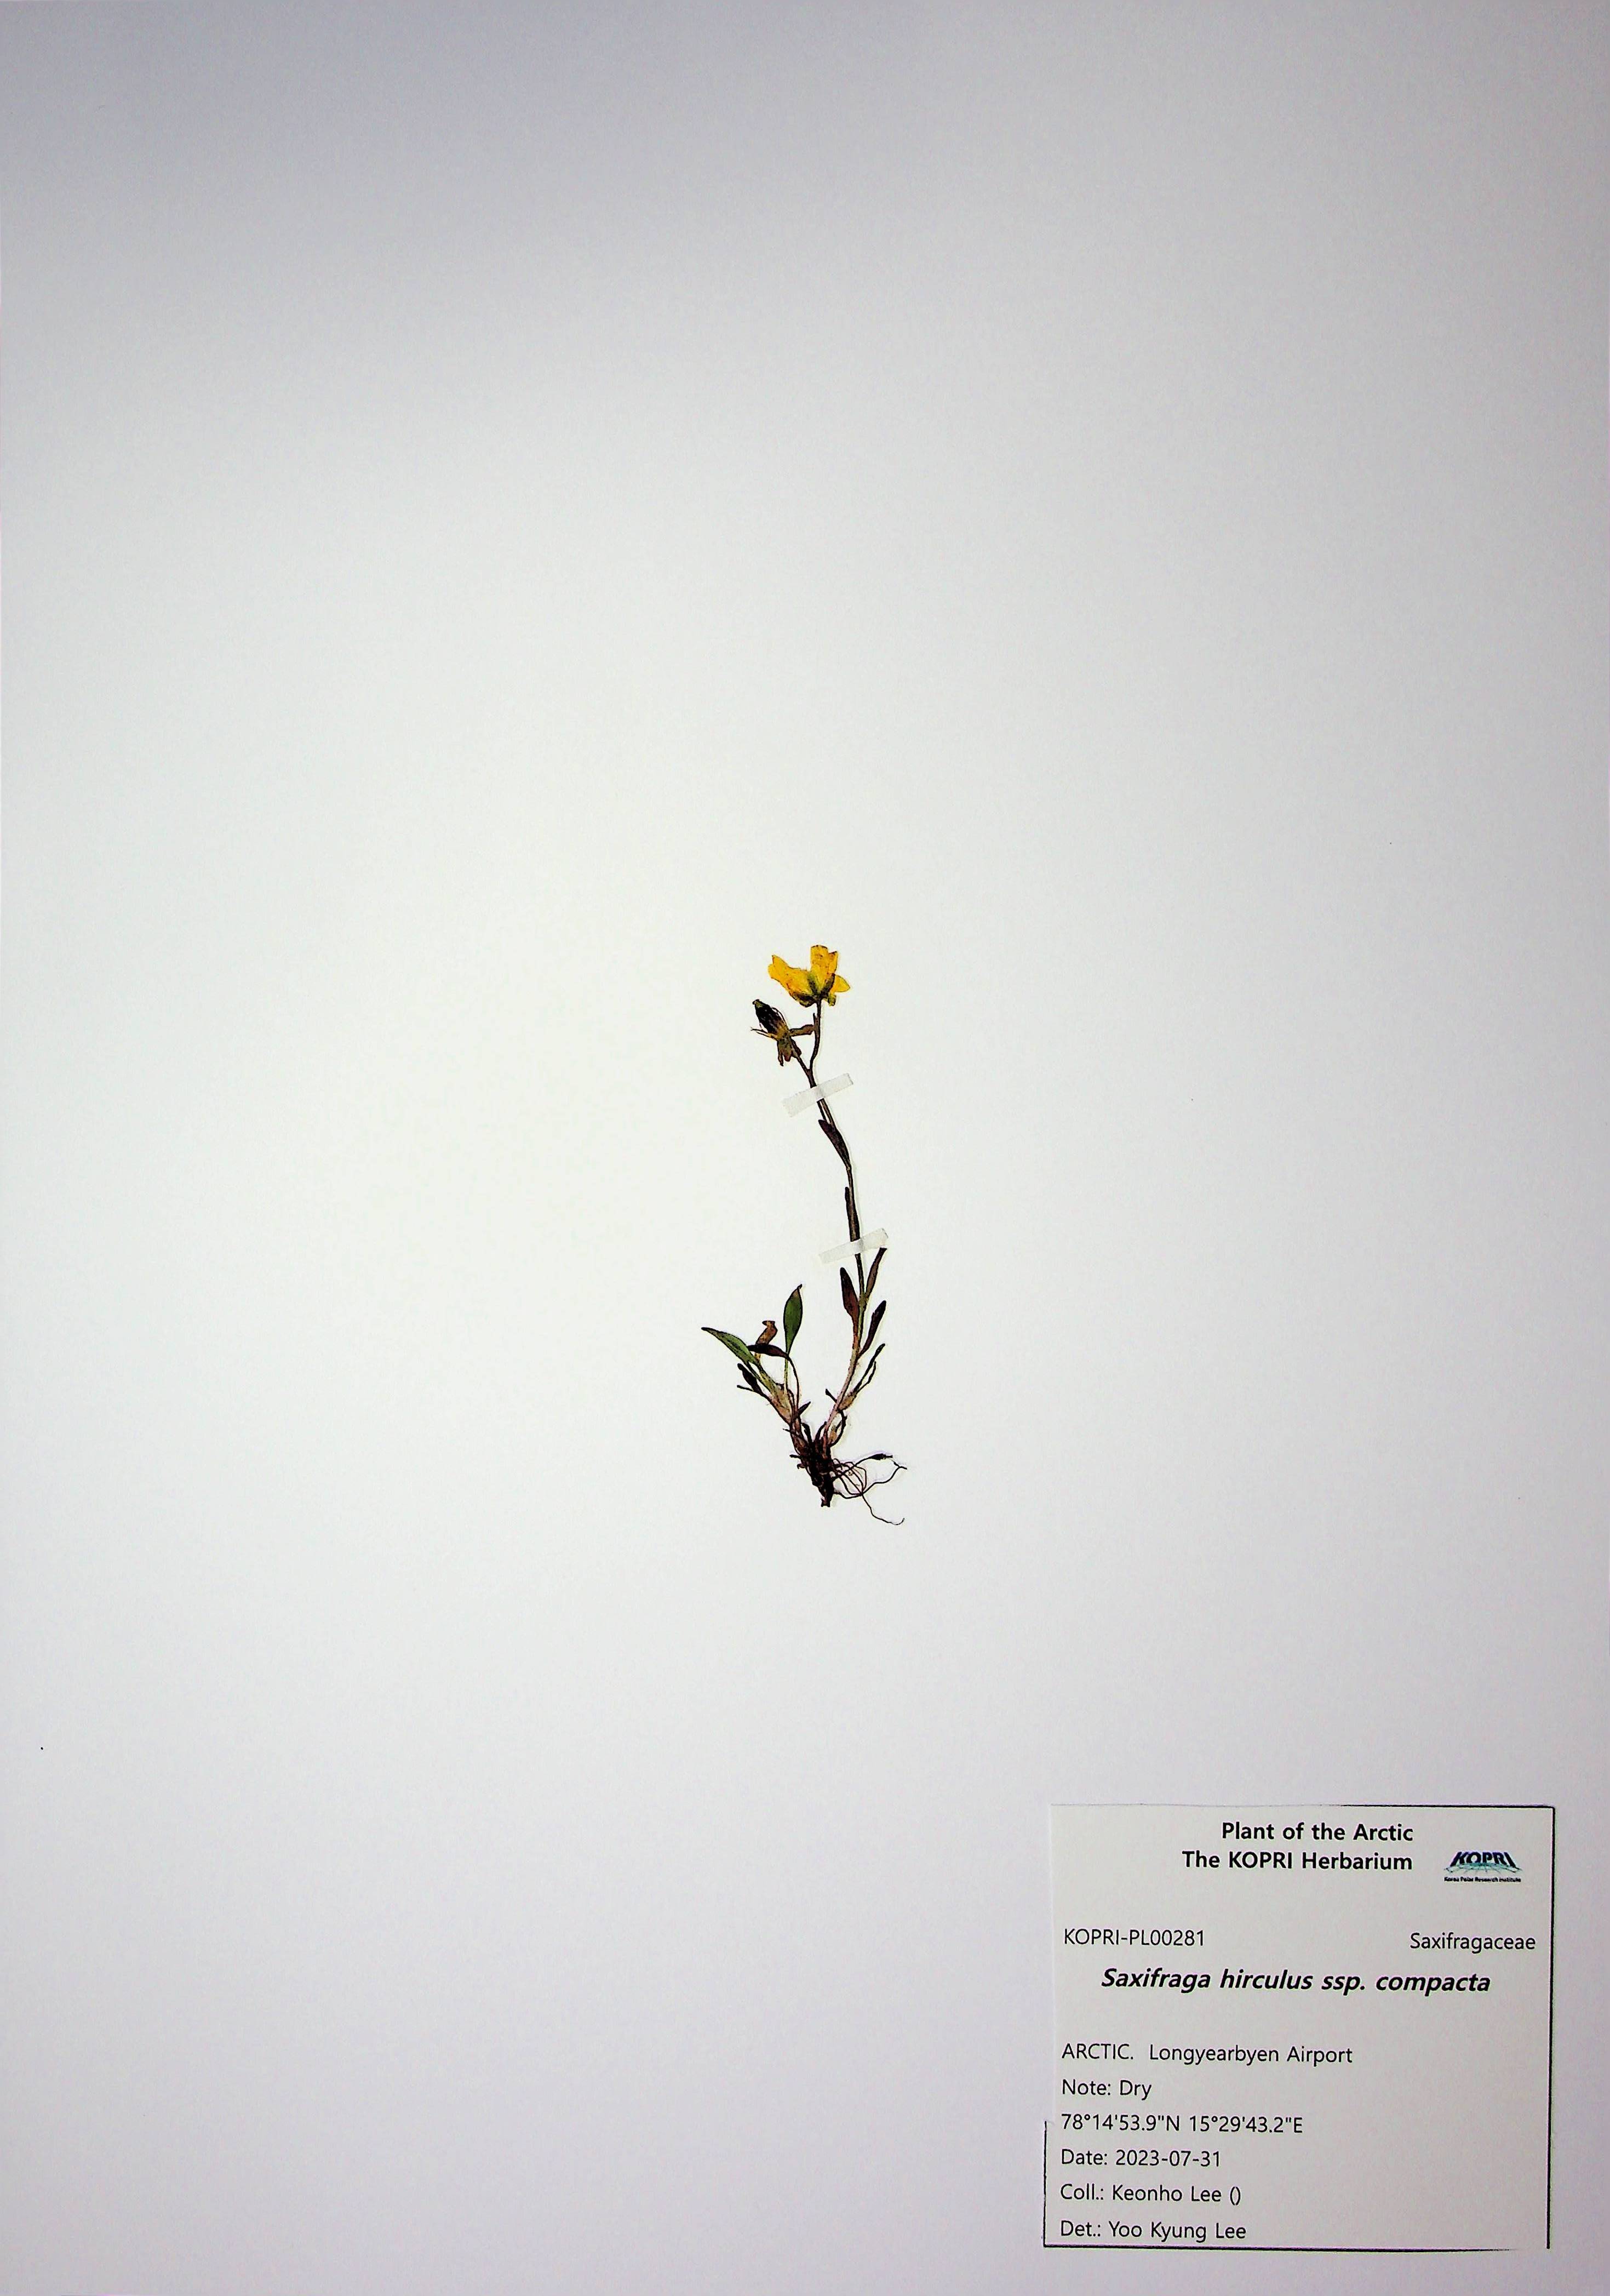 Saxifraga hirculus ssp. compacta